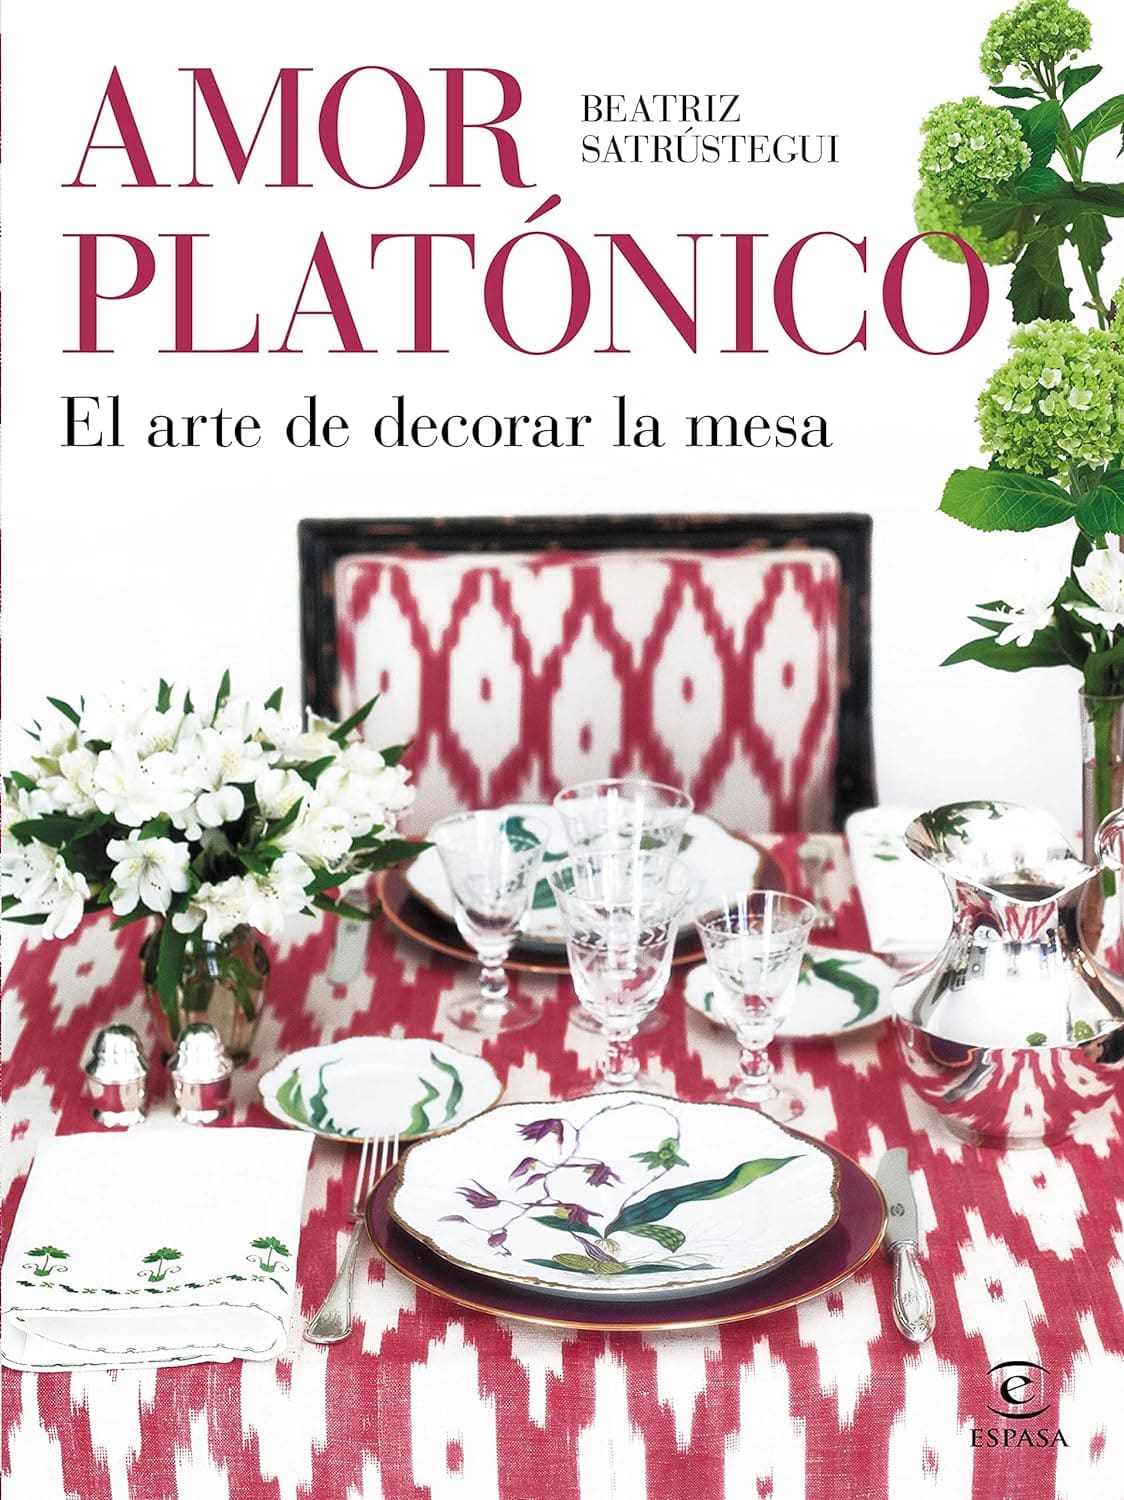 Amor platónico: El arte de decorar la mesa libro de decoración de mesas